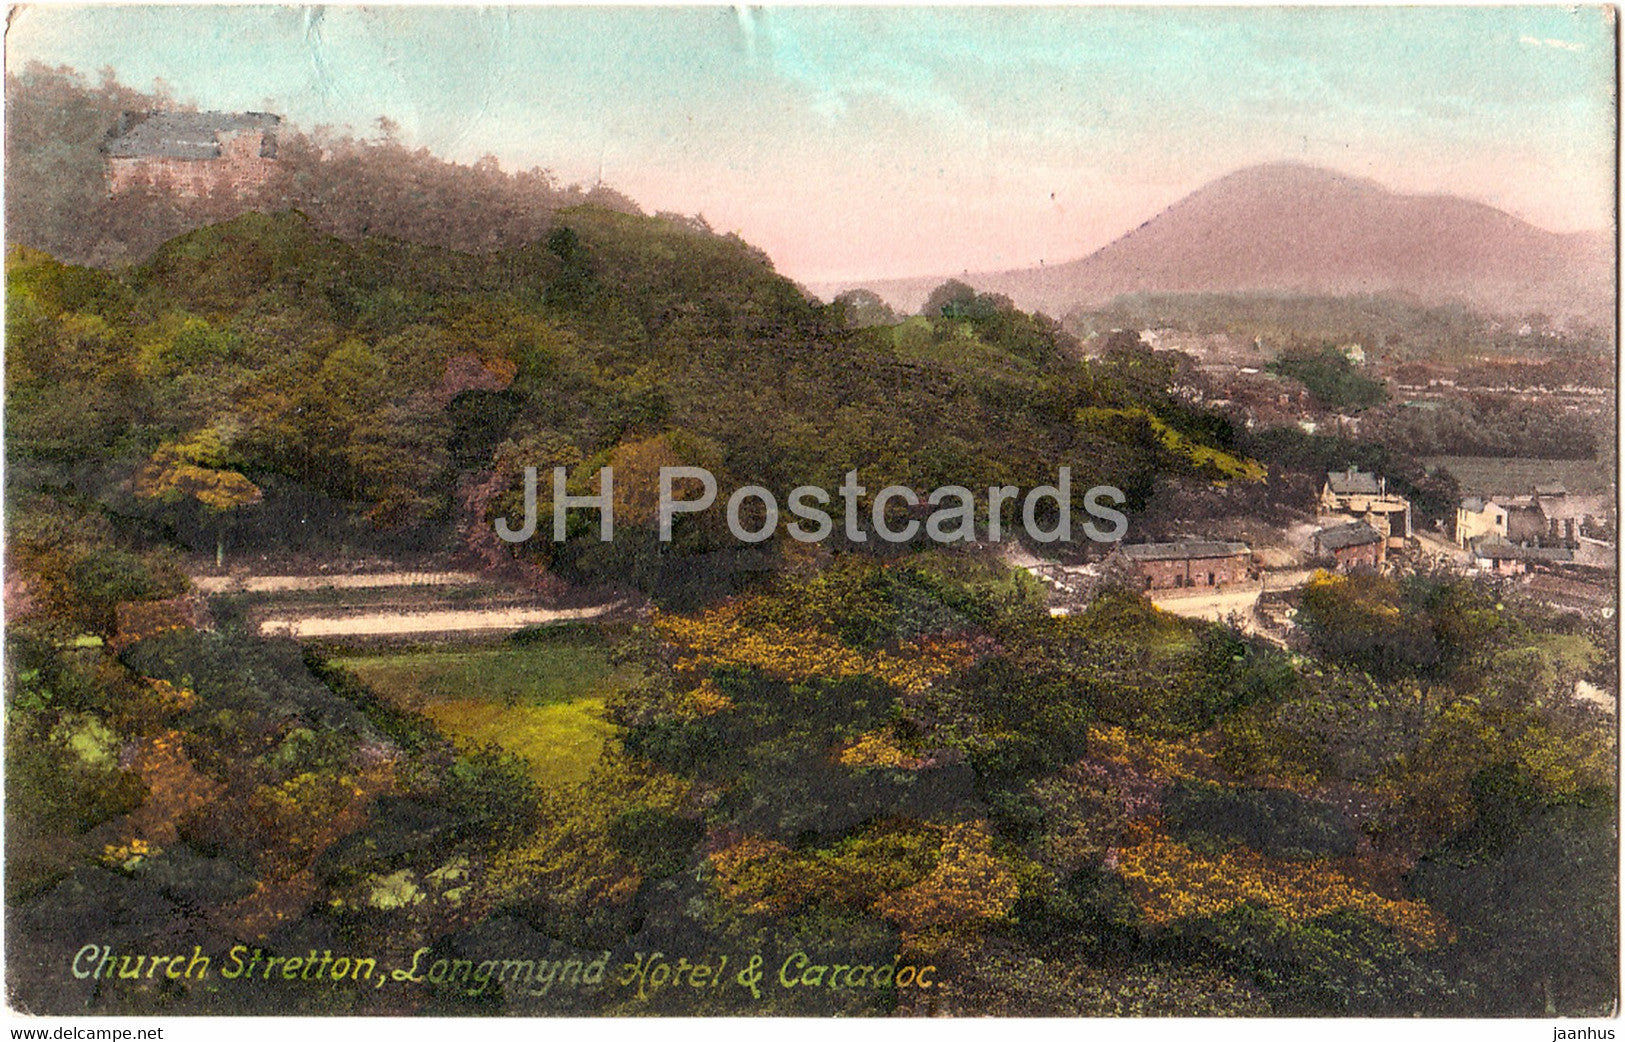 Church Stretton - Longmynd Hotel & Caradoc - old postcard - England - 1912 - United Kingdom - used - JH Postcards